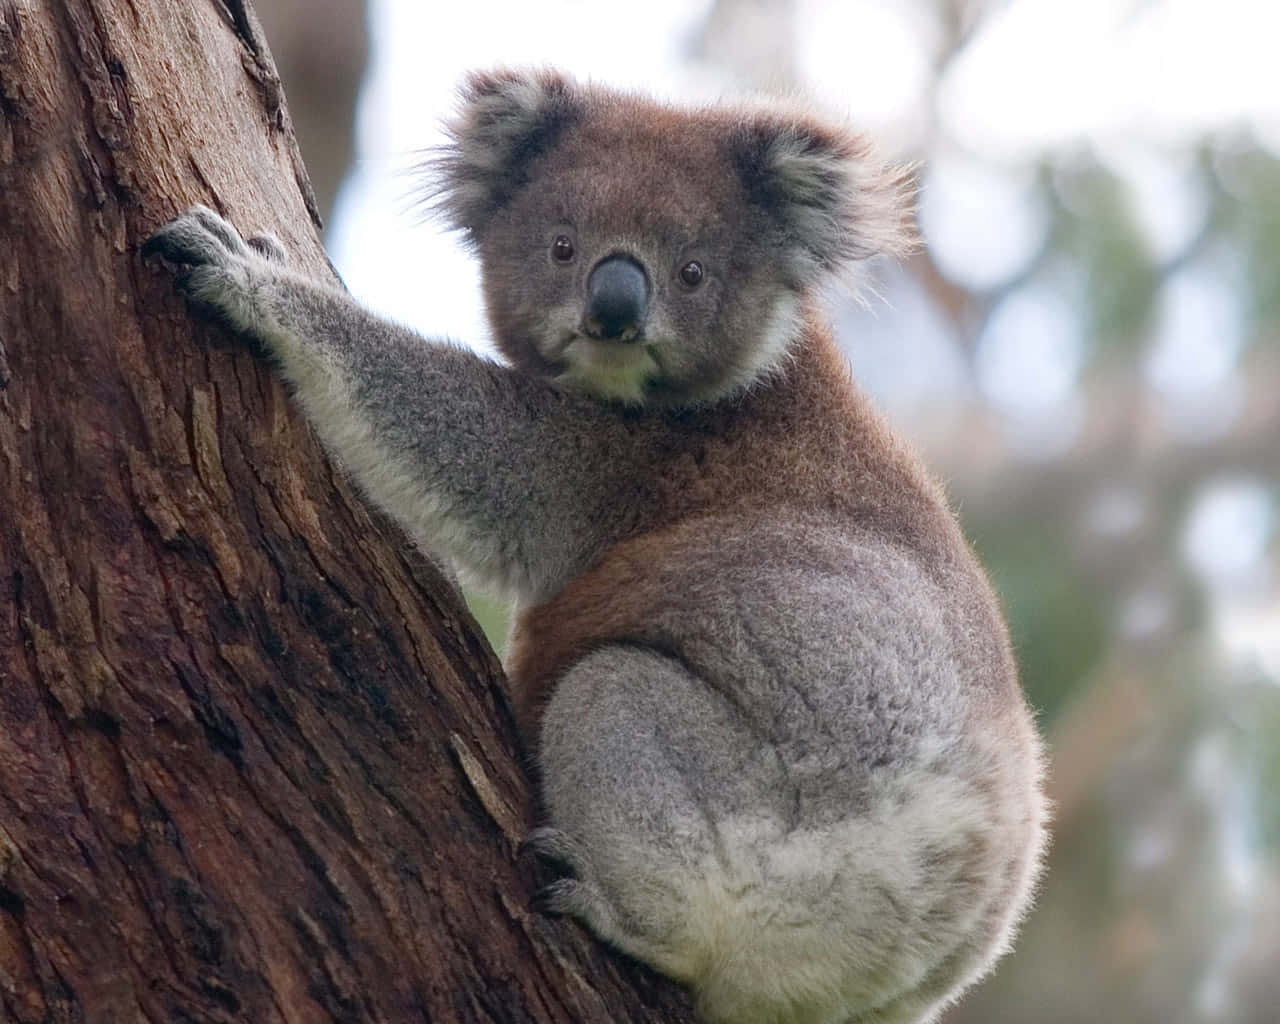 A peaceful koala bear resting in a tree.